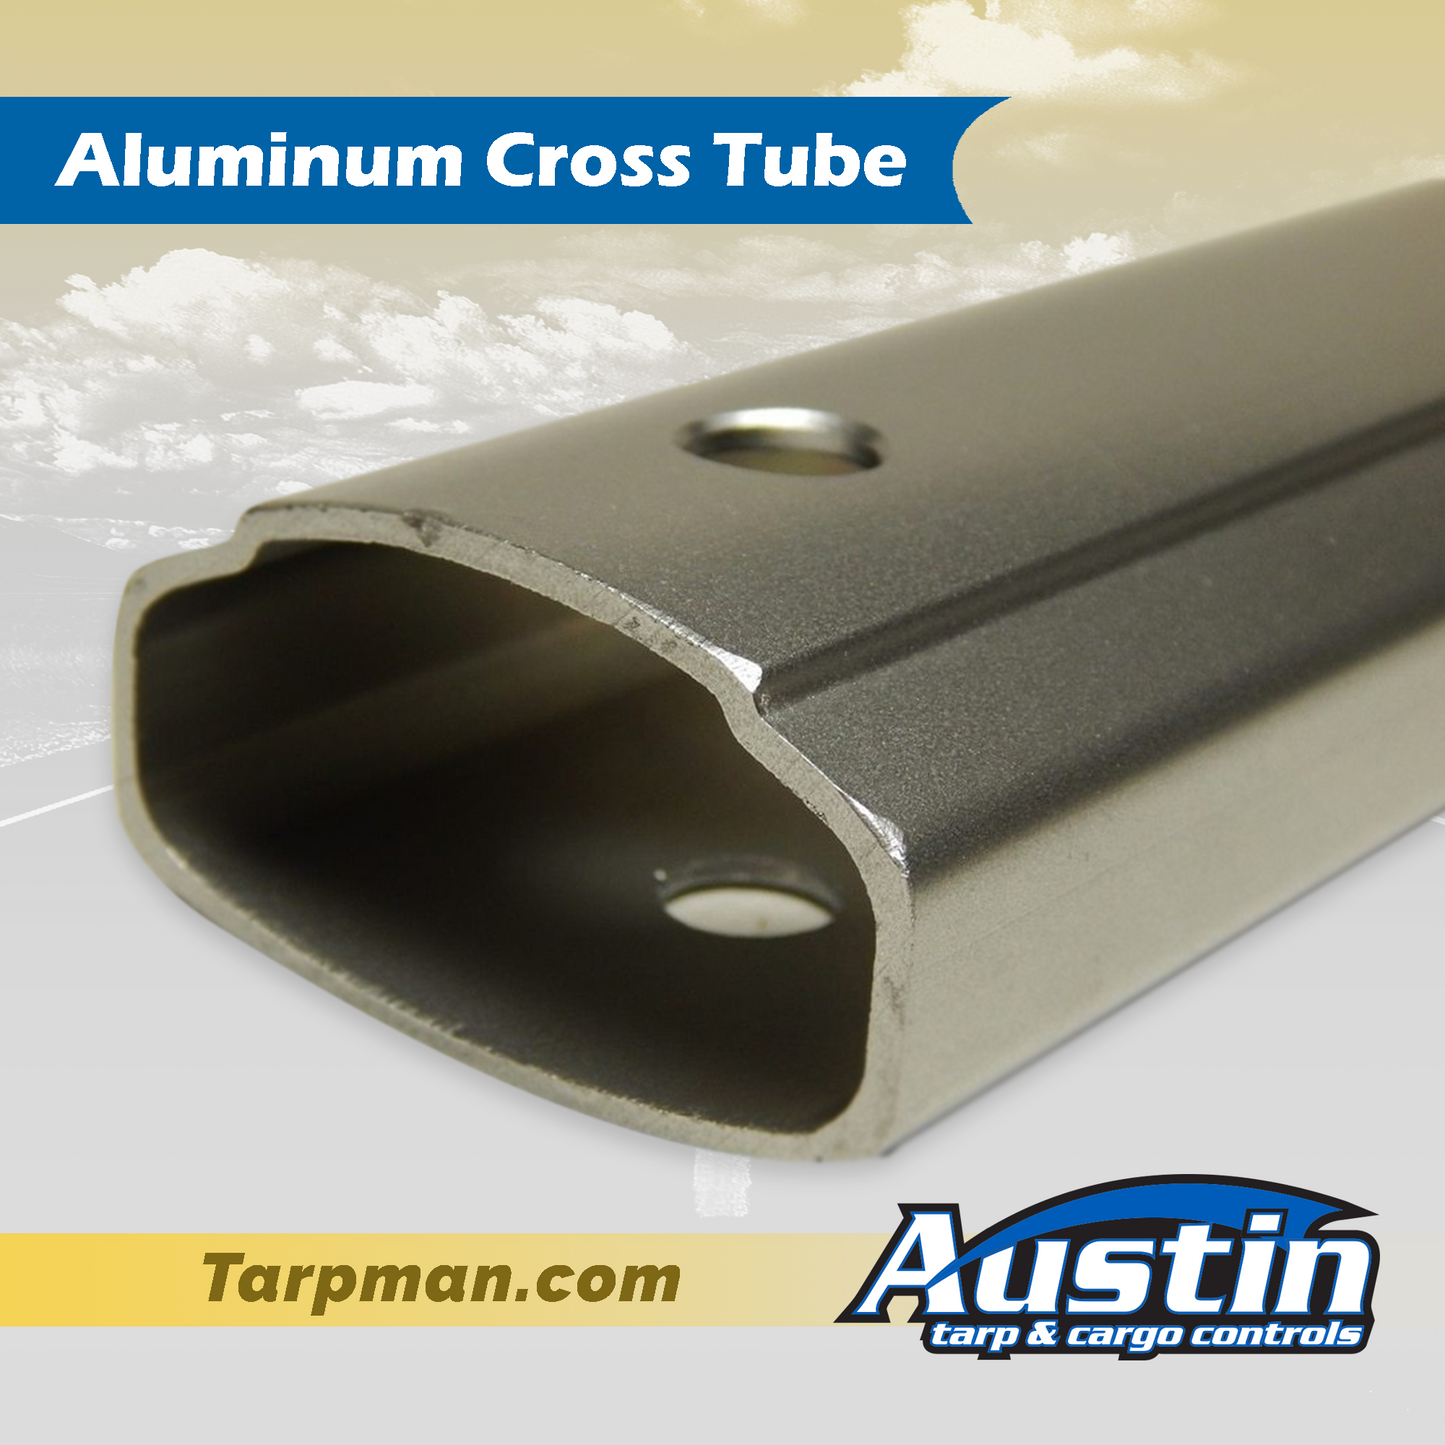 103"/110" Aluminum Cross Tube Tarpman.com | Austin Tarp & Cargo Controls